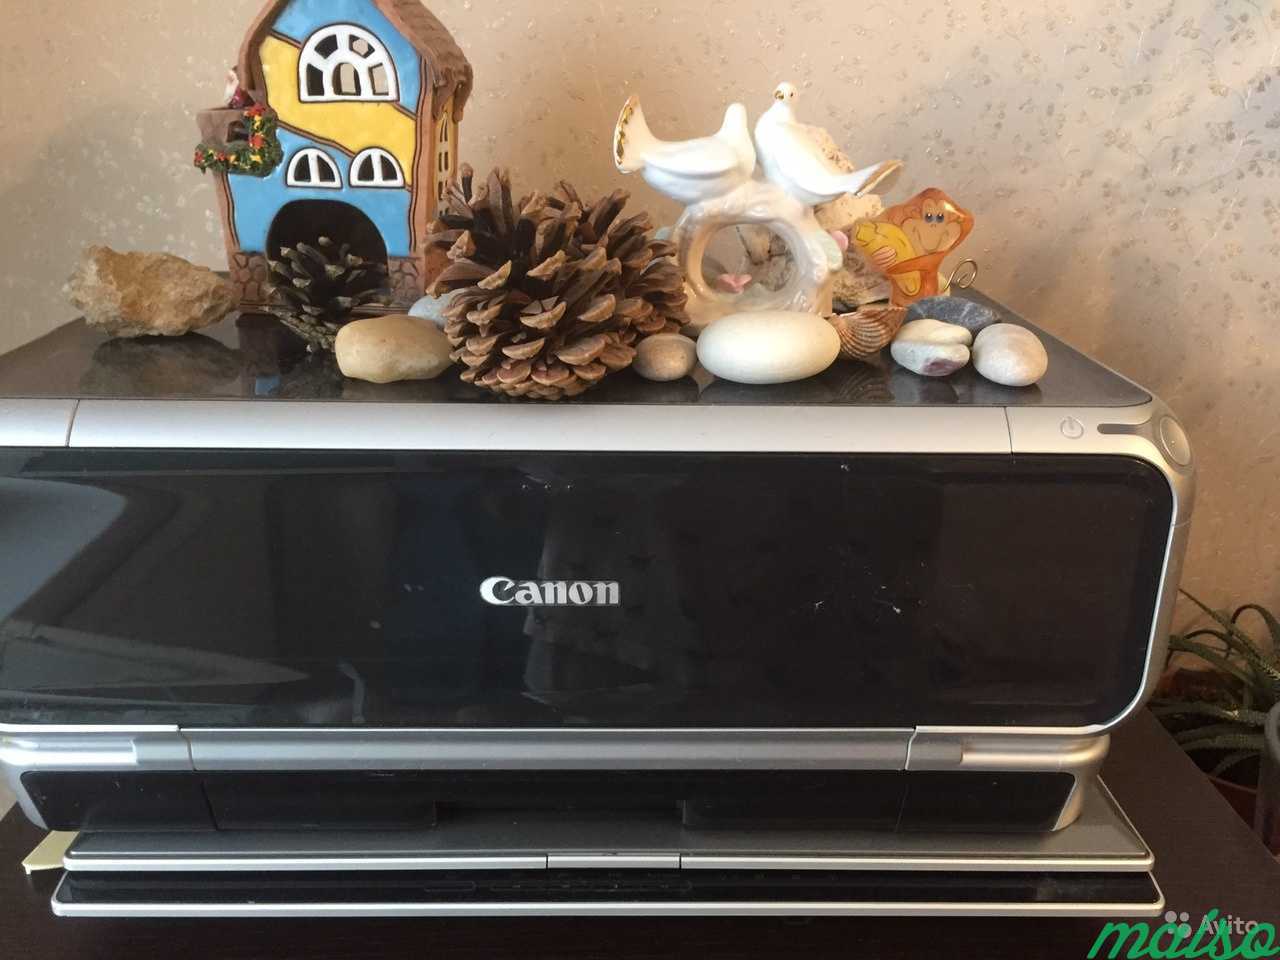 Принтер Canon струйный Pixma ip 5000 в Санкт-Петербурге. Фото 1